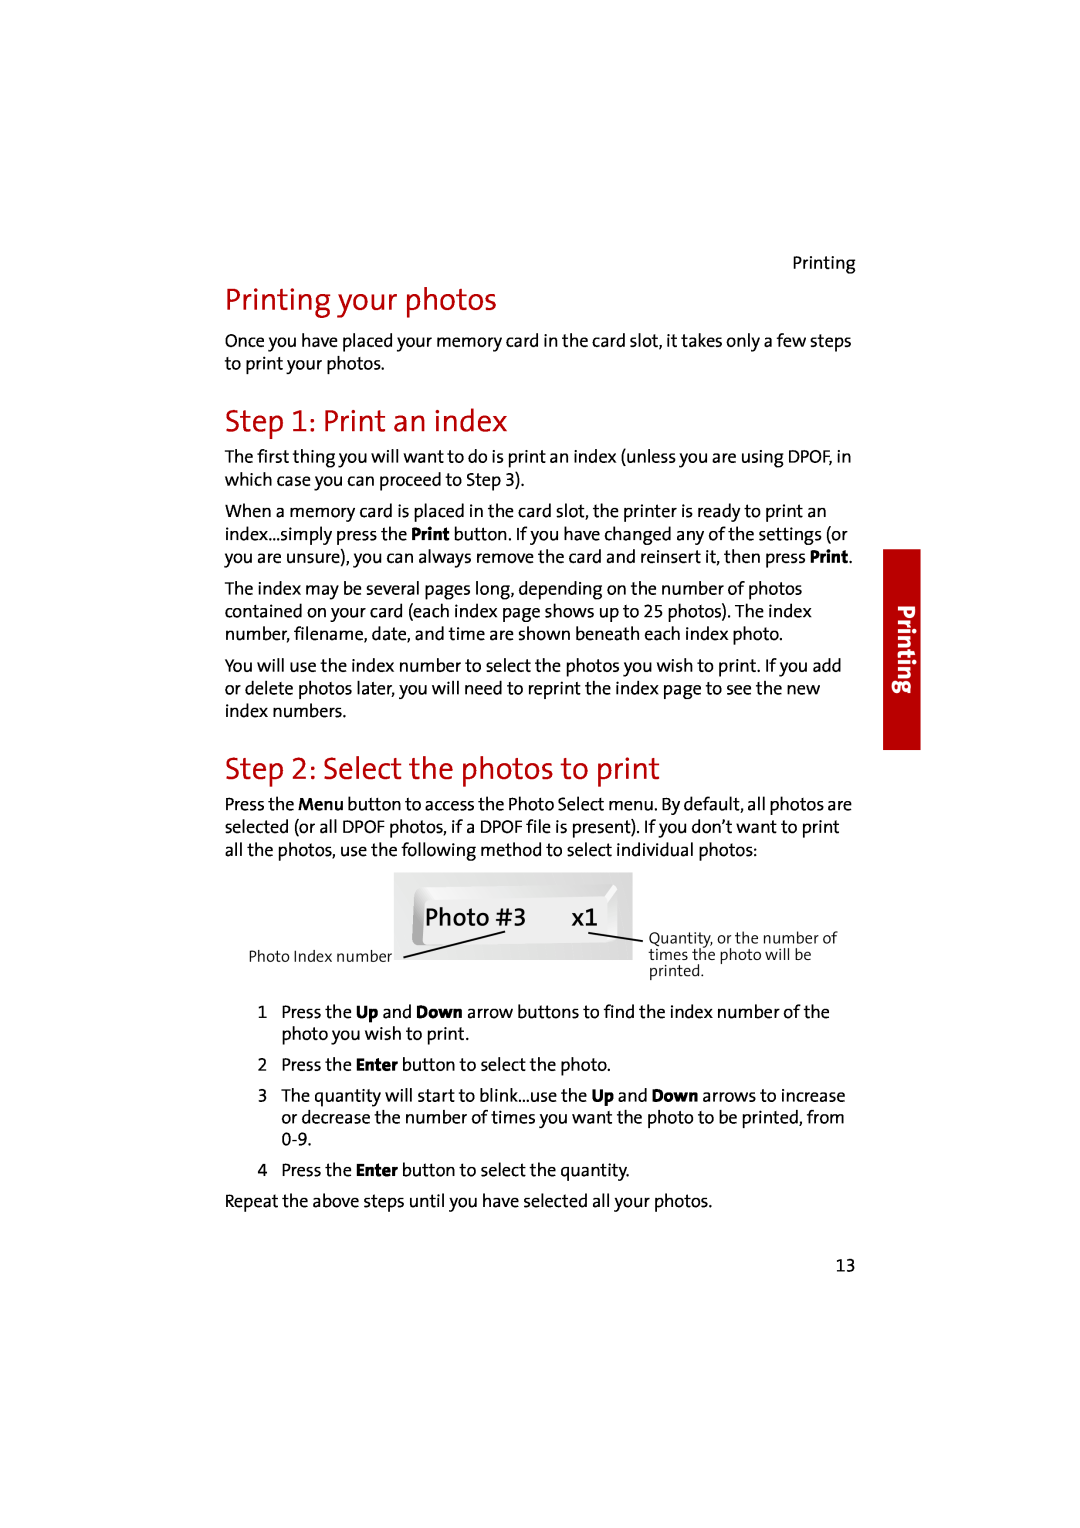 Compaq 1400P manual Printing your photos, Print an index, Select the photos to print, Photo #3 